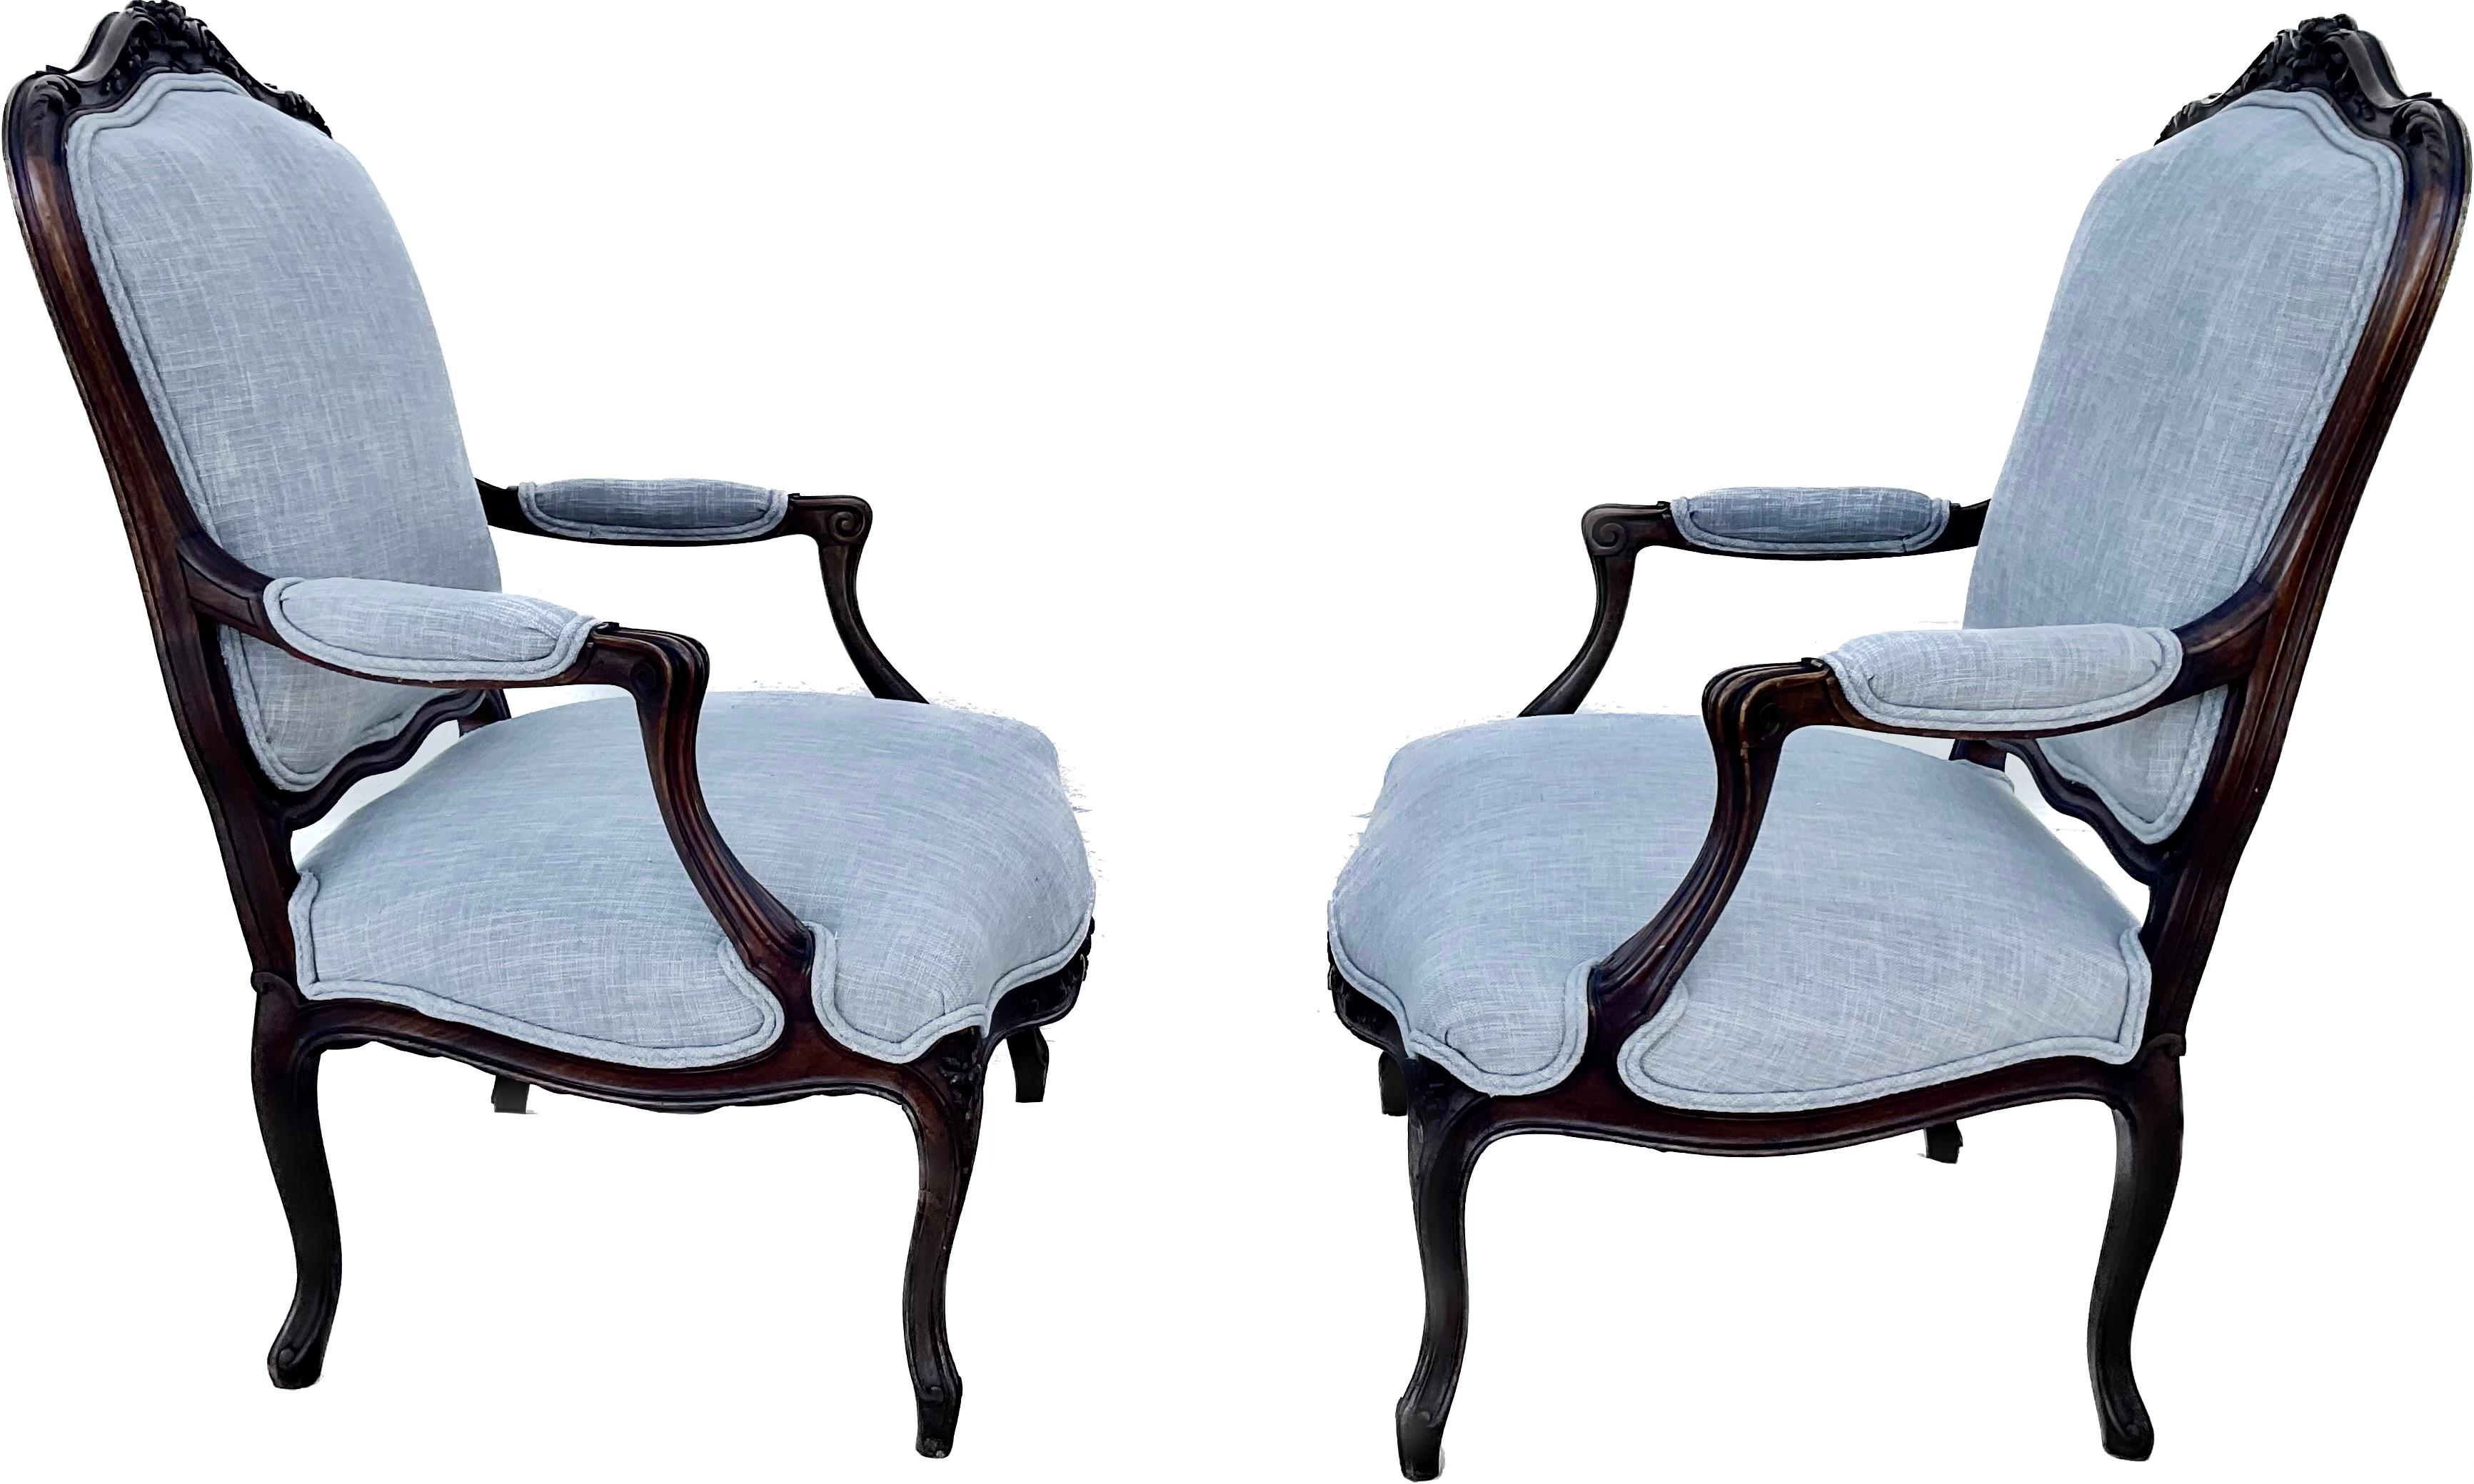 Superbes fauteuils anciens en bois sculpté et tapisserie Louis XV du 19ème siècle. Joli cimier sculpté de feuilles d'acanthe, tablier et pieds cabriole, avec accoudoirs, assise et dossier tapissés bleu clair.  Sur une échelle de 1 à 10, la sculpture